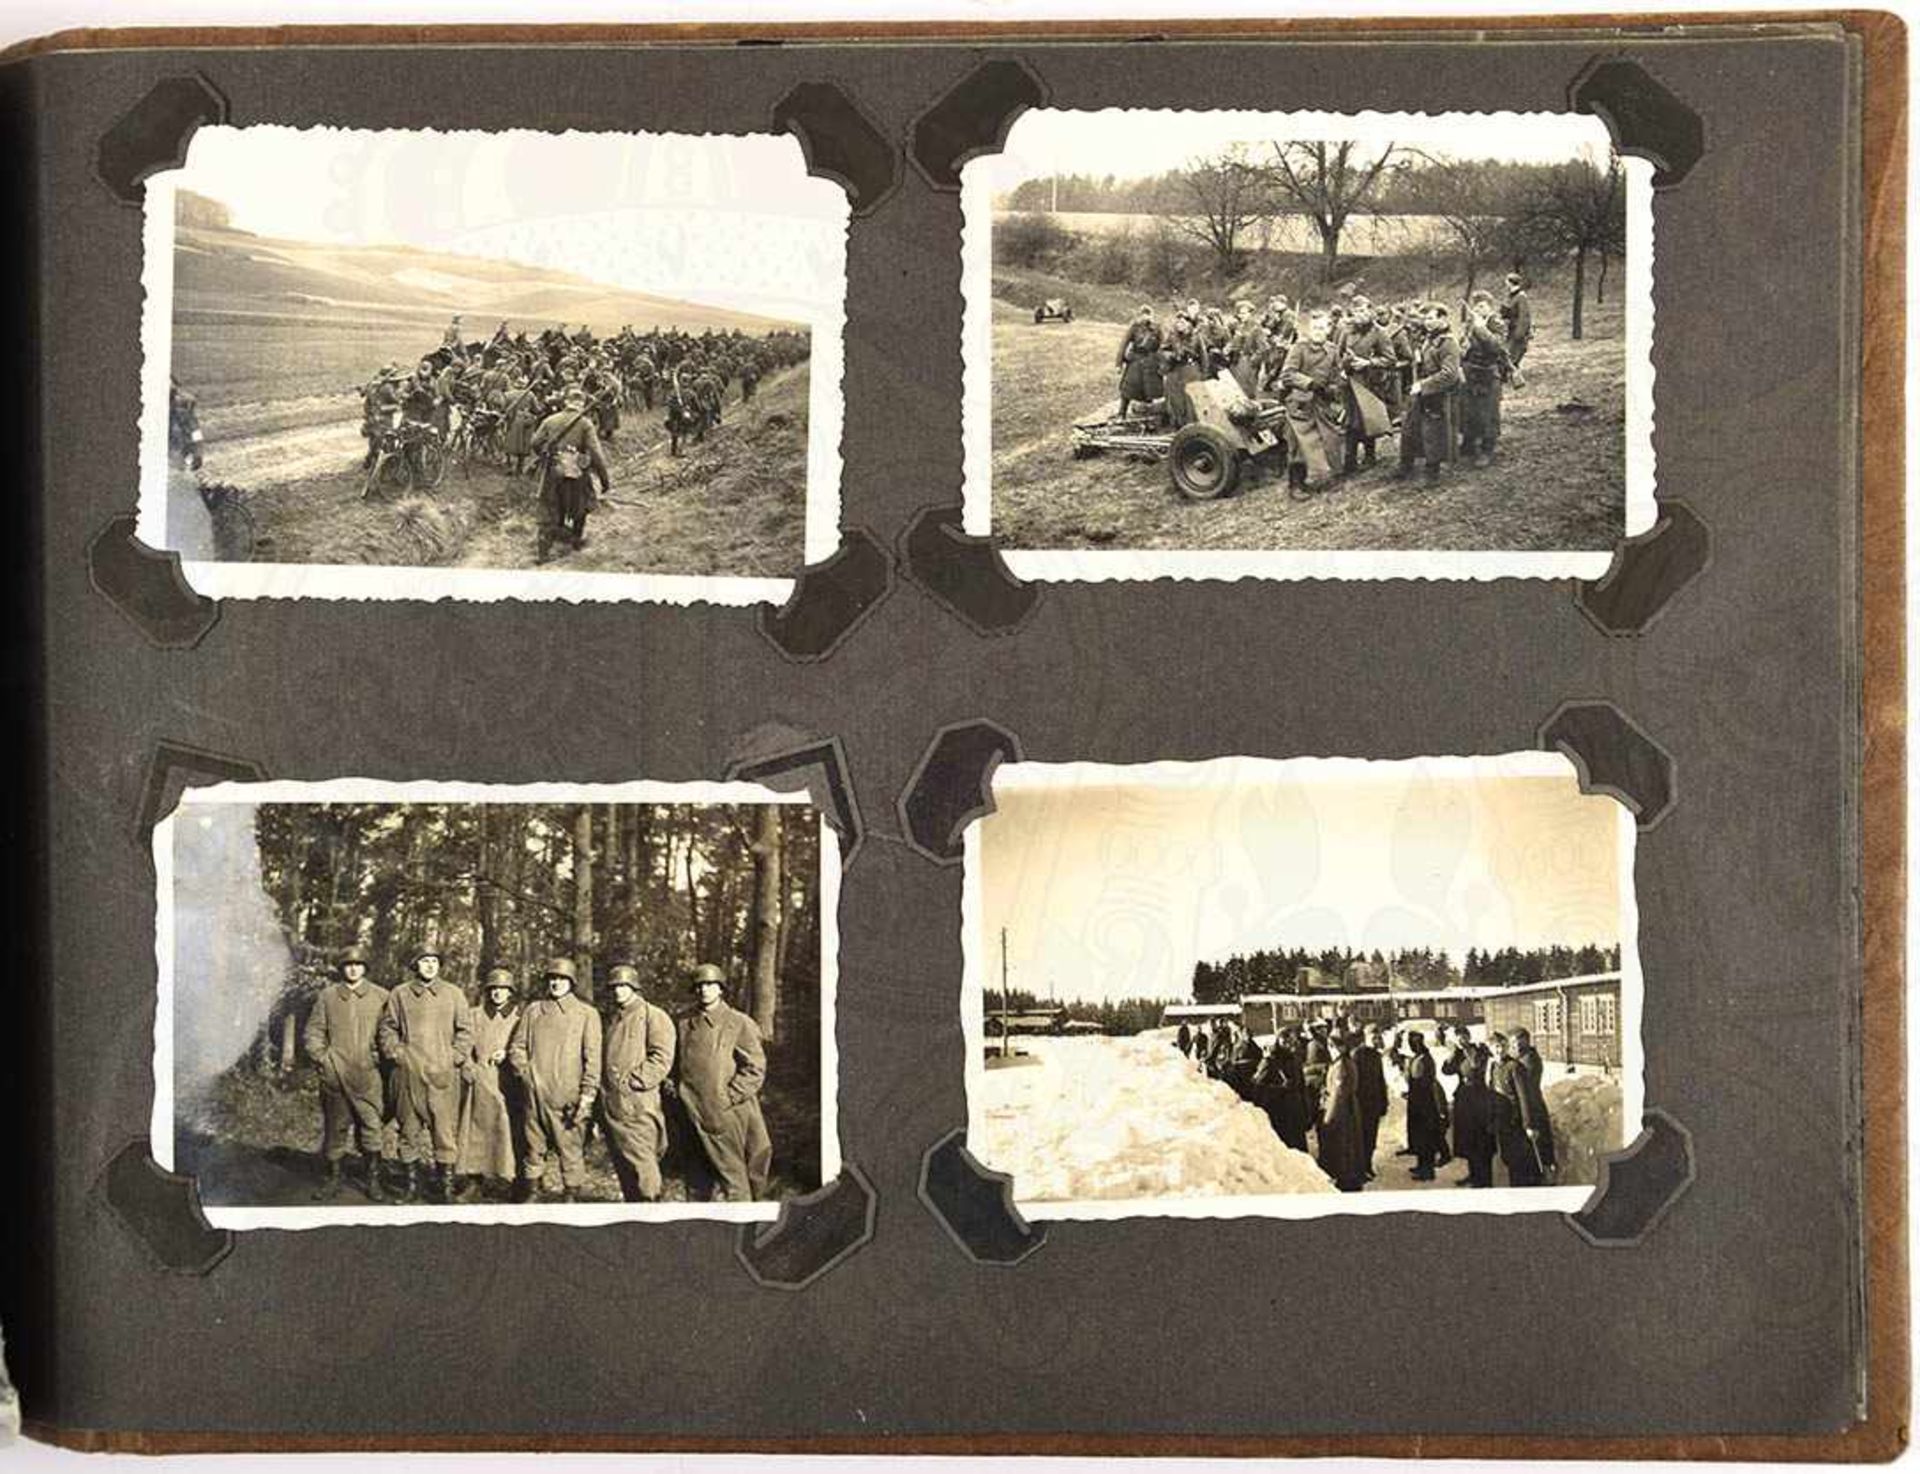 FOTOALBUM EINER RADFAHR-AUFKLÄRUNGS-SCHWADRON, gebildet a. d. Kavallerie-Rgt. 3, m. 148 Fotos, - Bild 2 aus 3